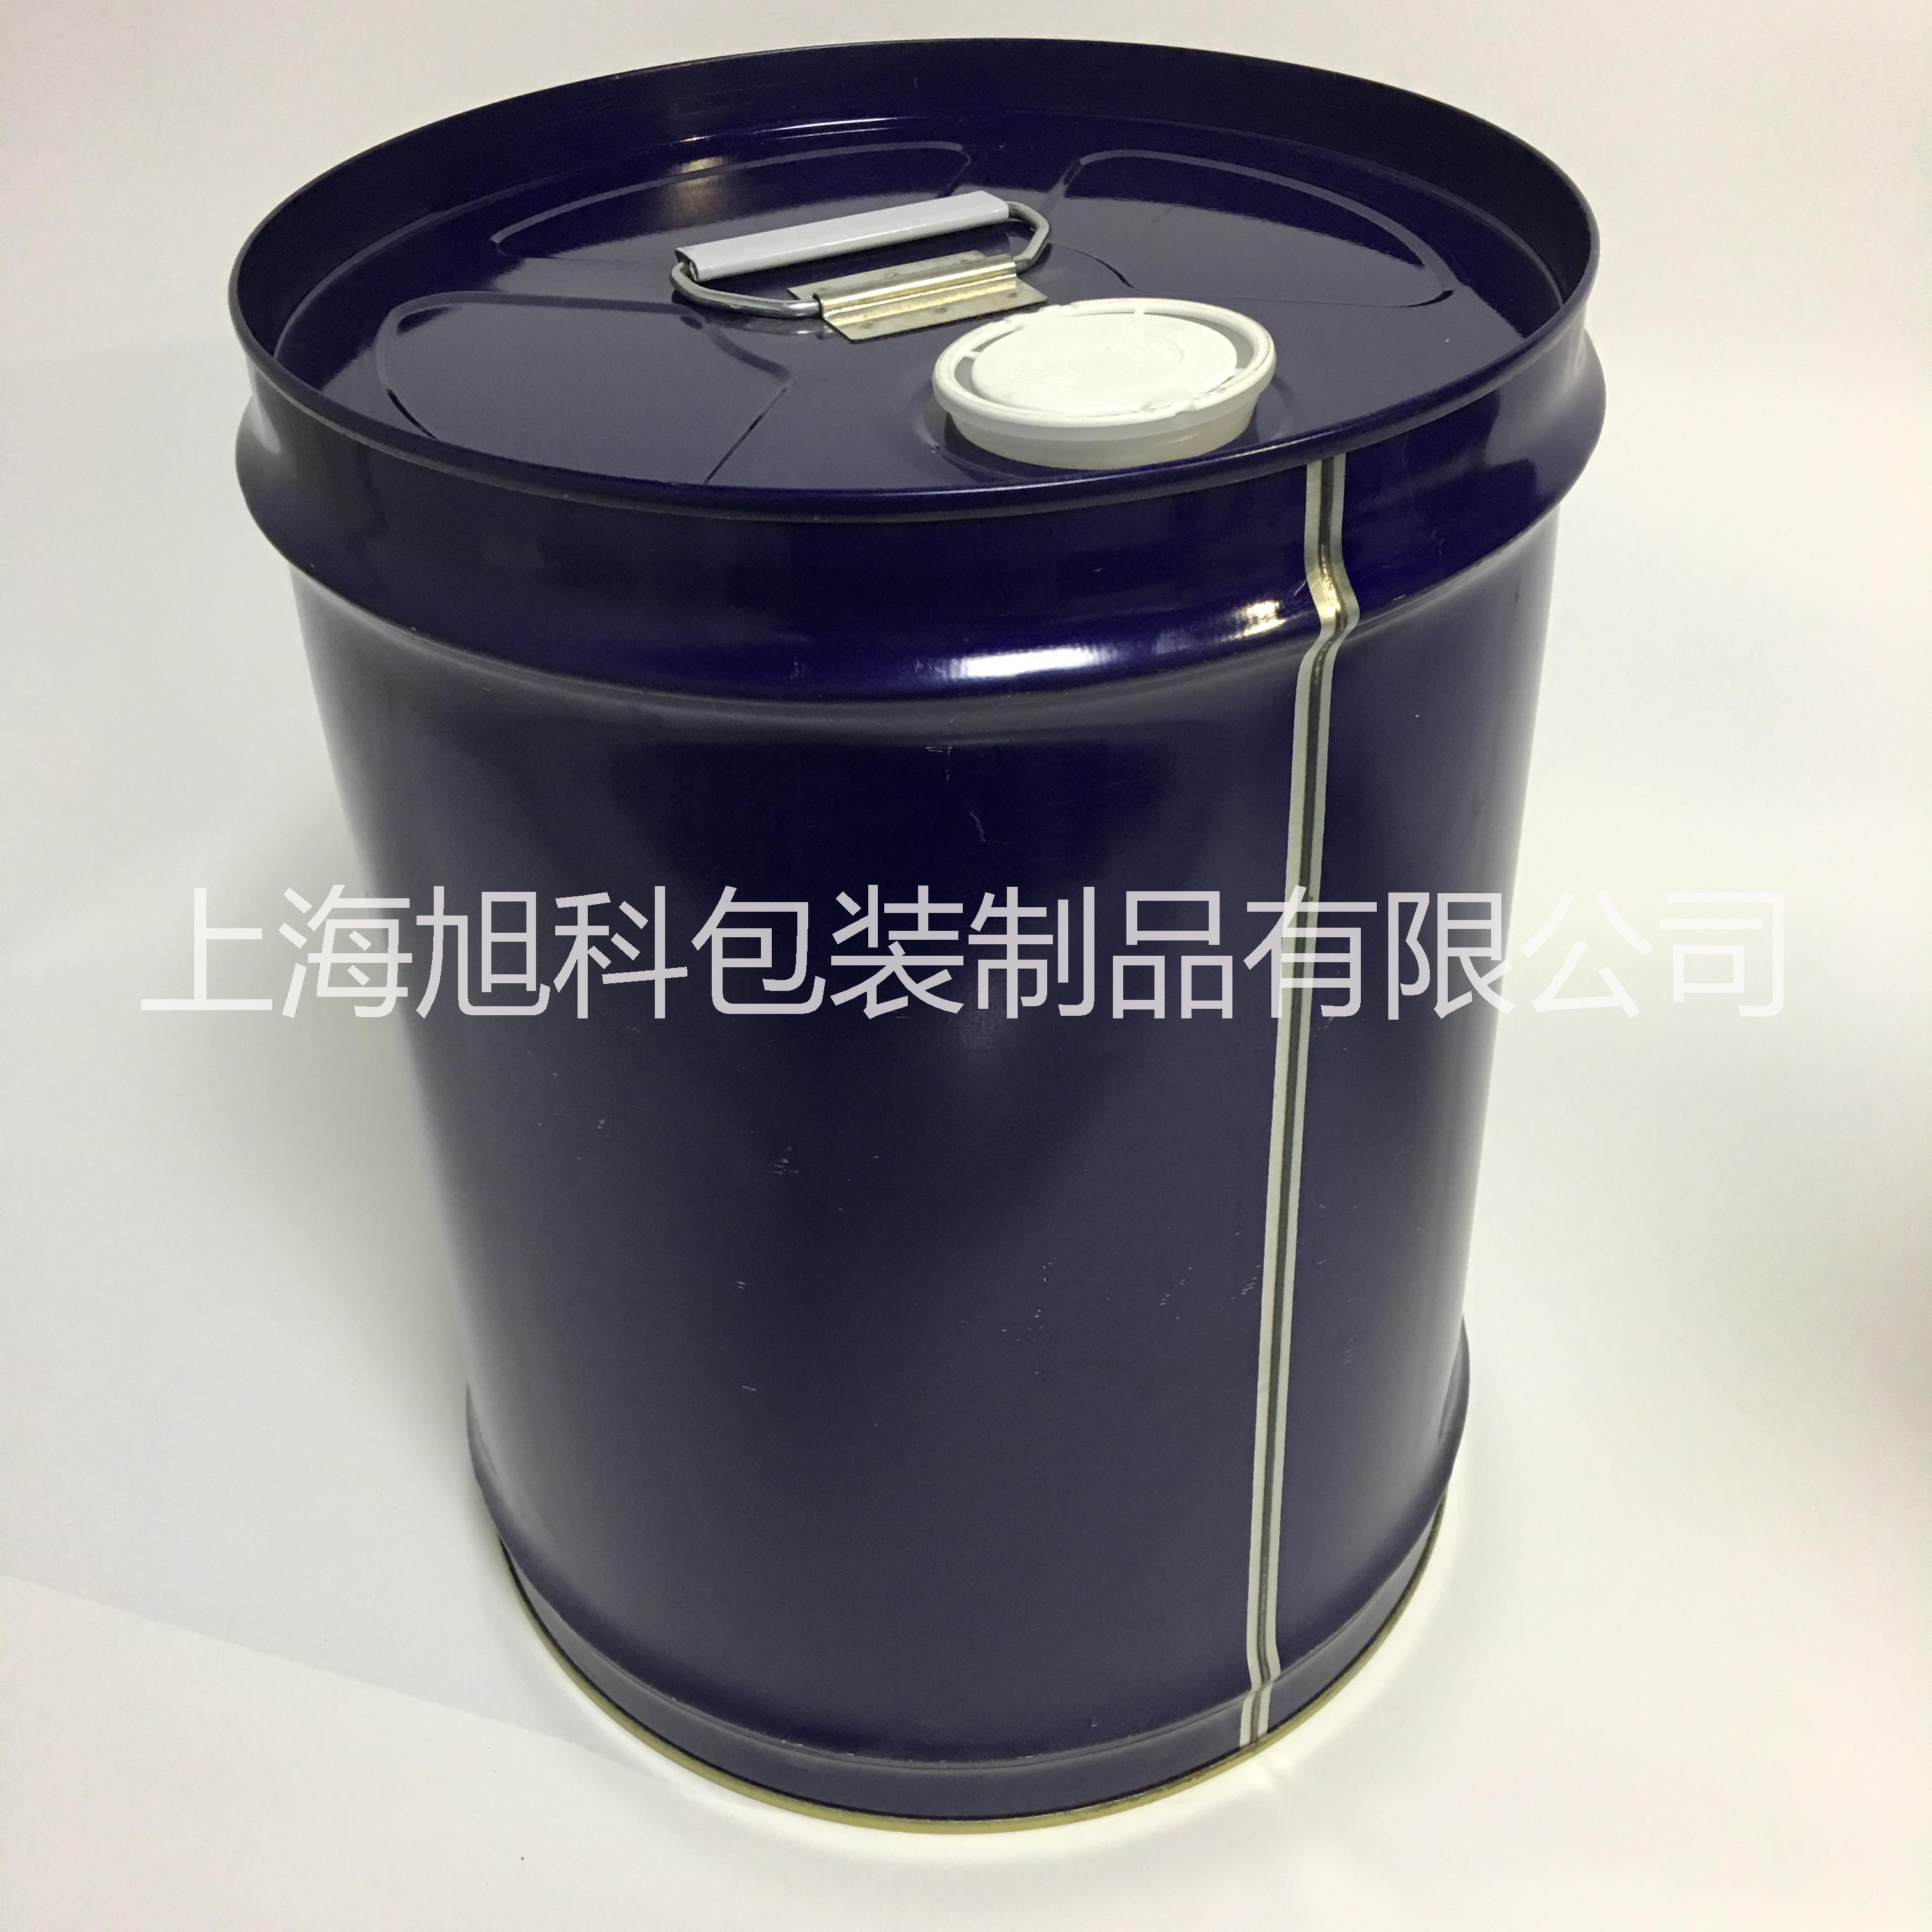 进口20kg化工小铁桶上海铁桶定制加工 20L冷冻油桶复盛油桶图片